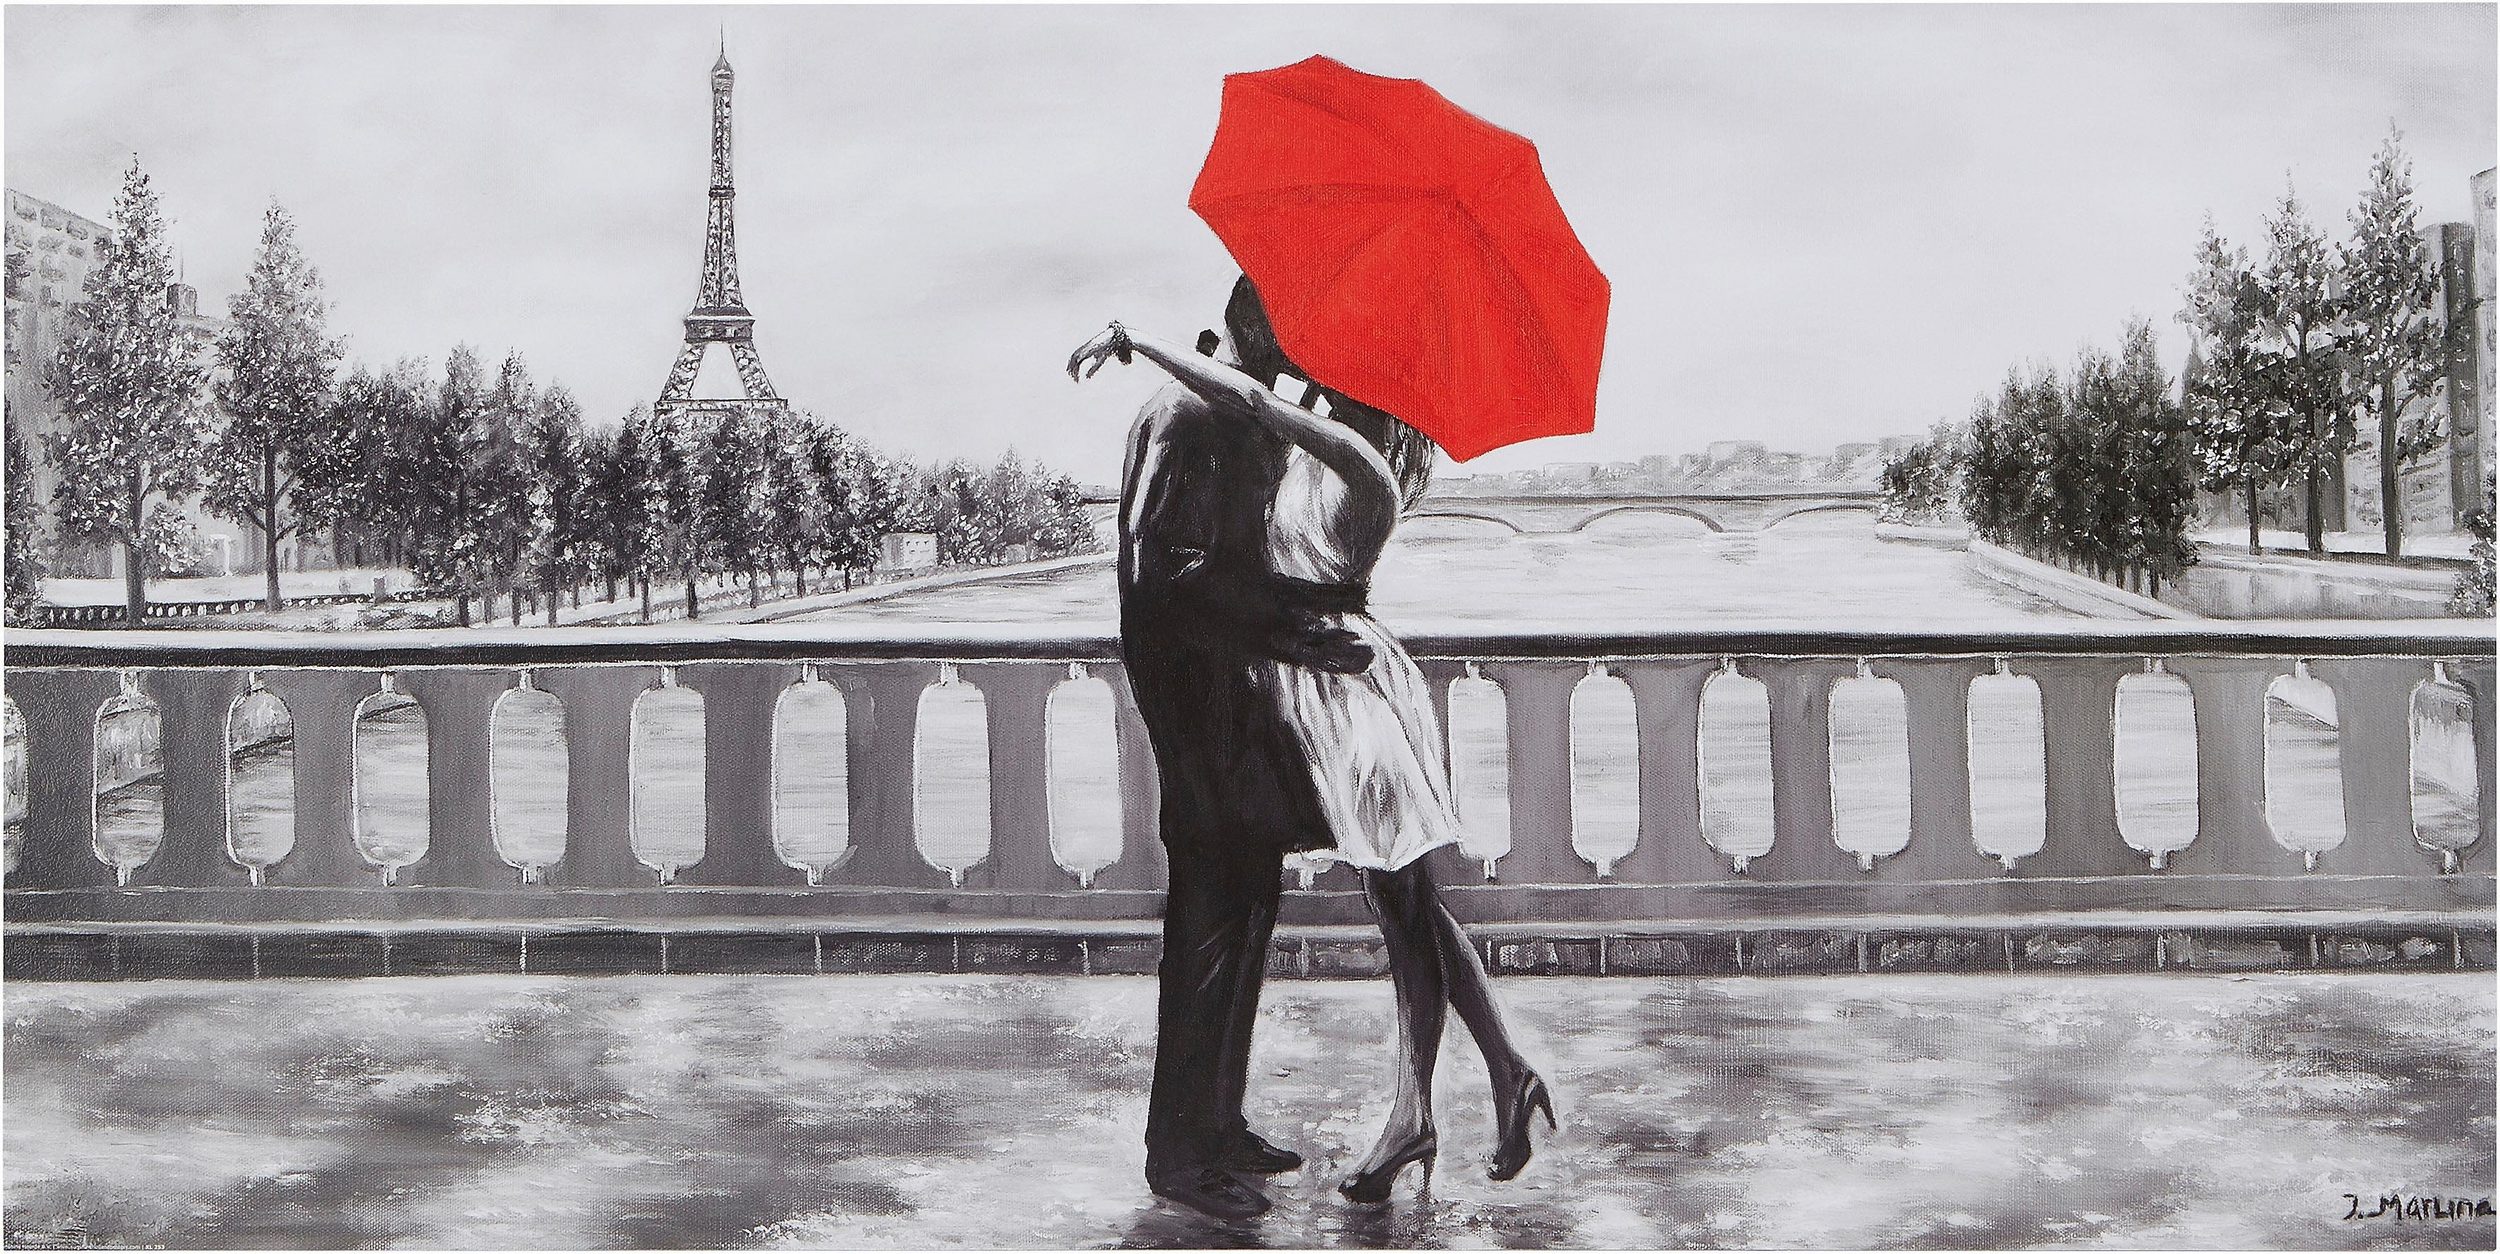 Das verliebte Paar mit dem roten Schirm